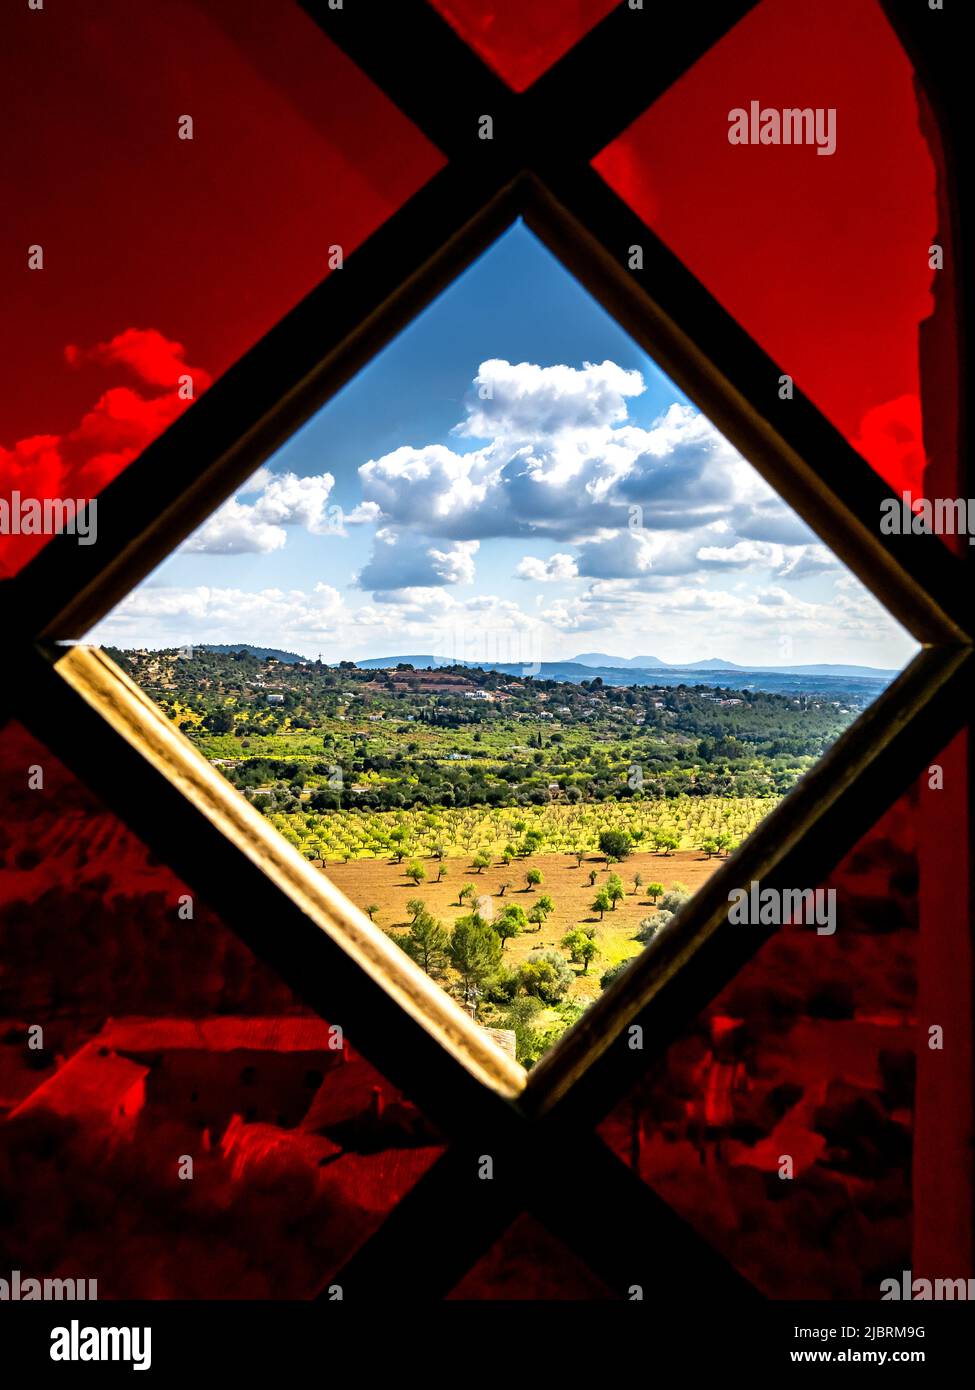 Portrait pris des pentes sud de sa Muntanyeta d'un paysage luxuriant vu à travers le verre manquant dans une fenêtre en verre rouge de l'intérieur Banque D'Images